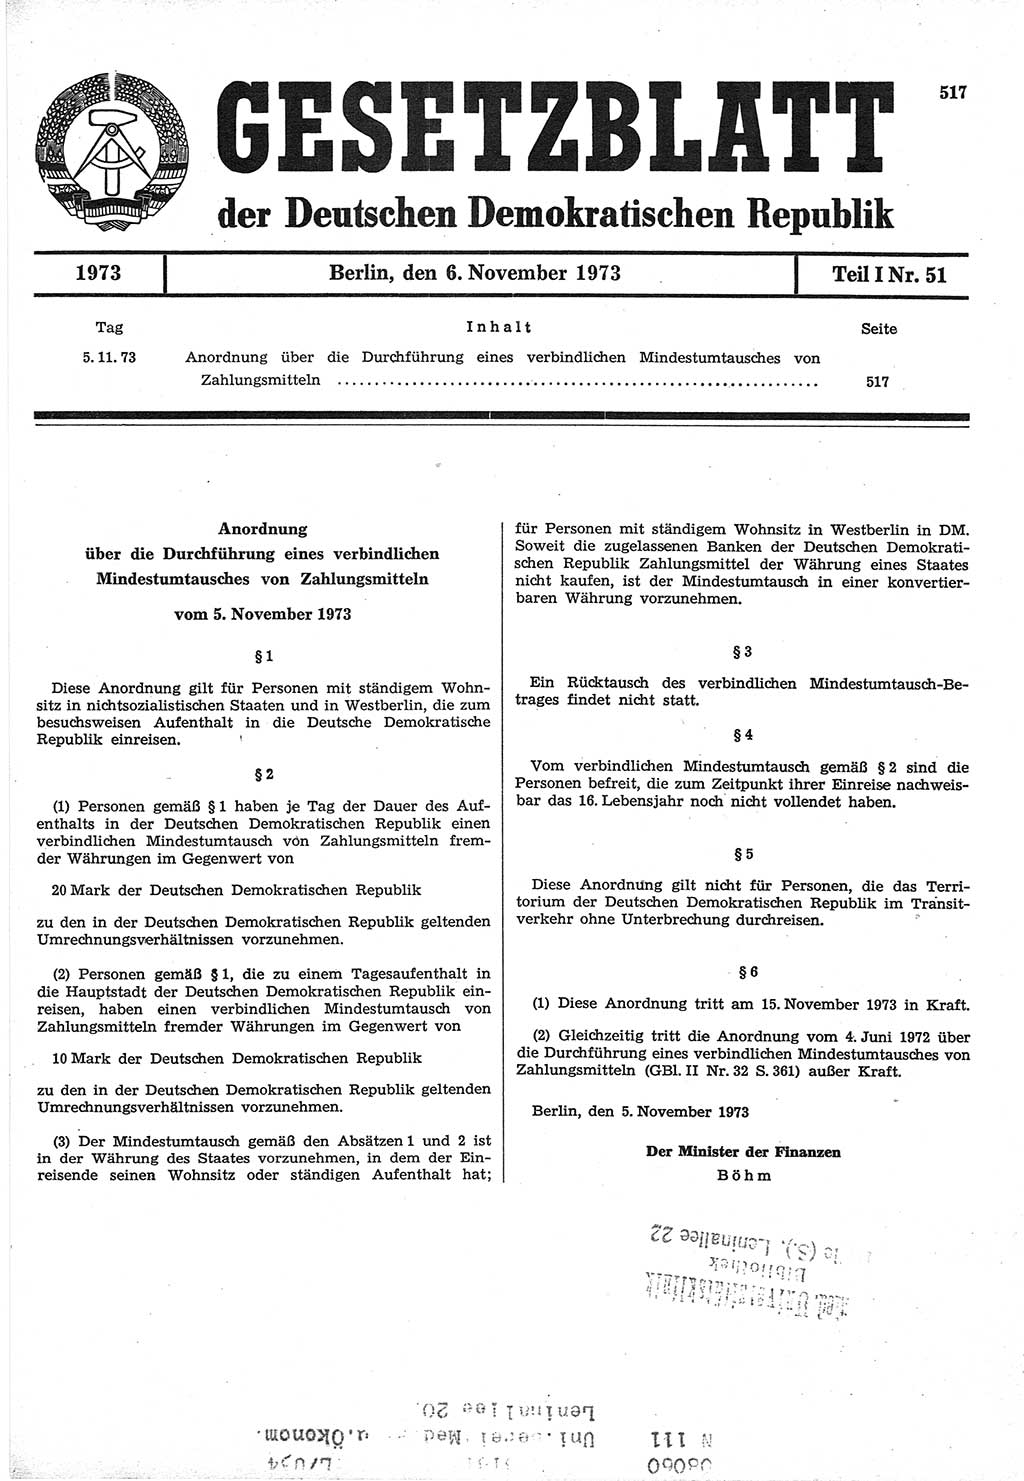 Gesetzblatt (GBl.) der Deutschen Demokratischen Republik (DDR) Teil Ⅰ 1973, Seite 517 (GBl. DDR Ⅰ 1973, S. 517)